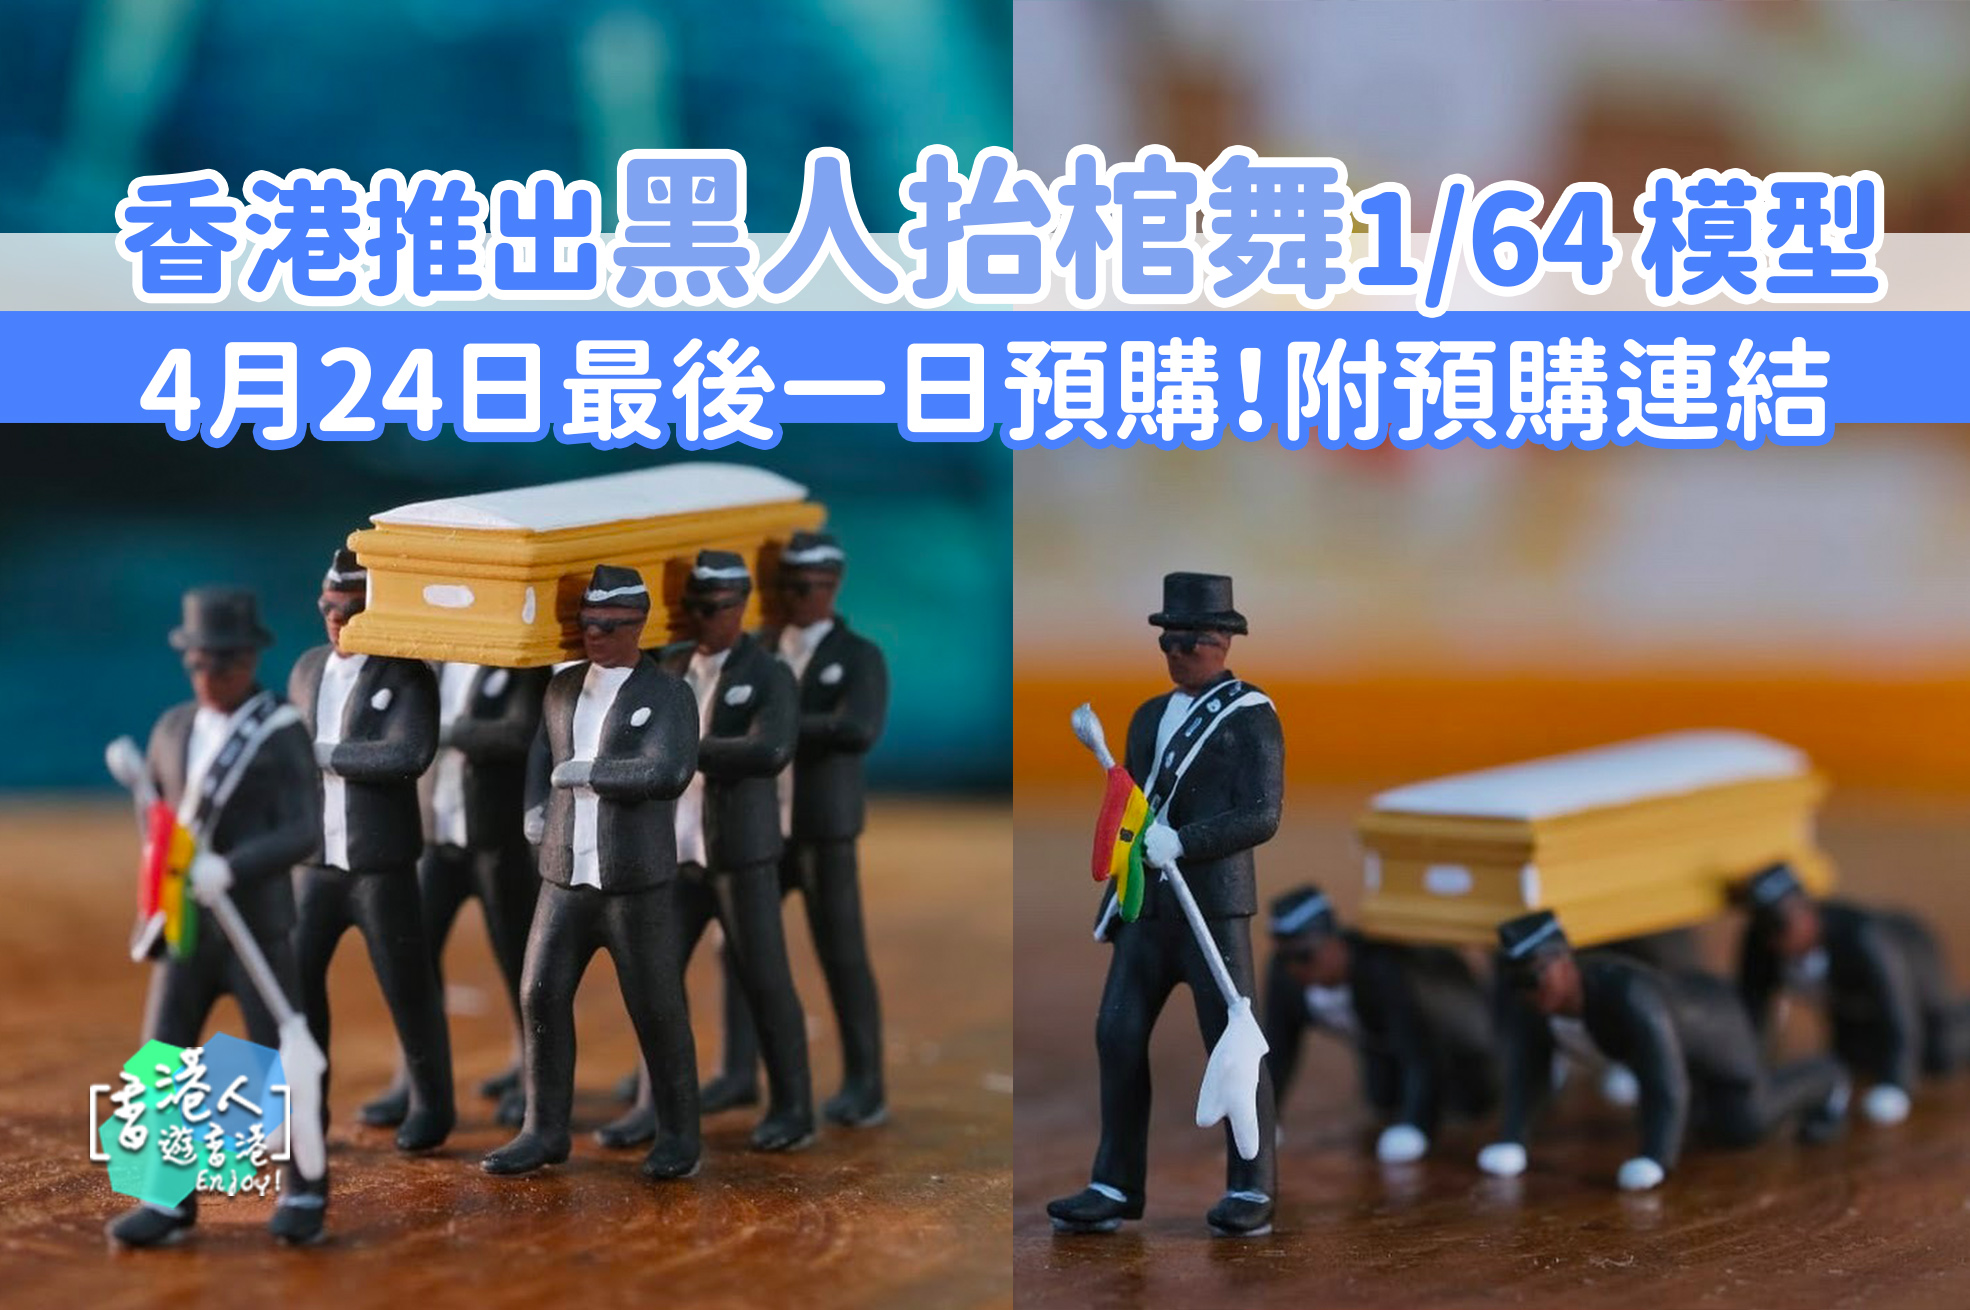 都市熱話 香港推出 黑人抬棺舞 1 64 模型 附預購連結 香港人遊香港